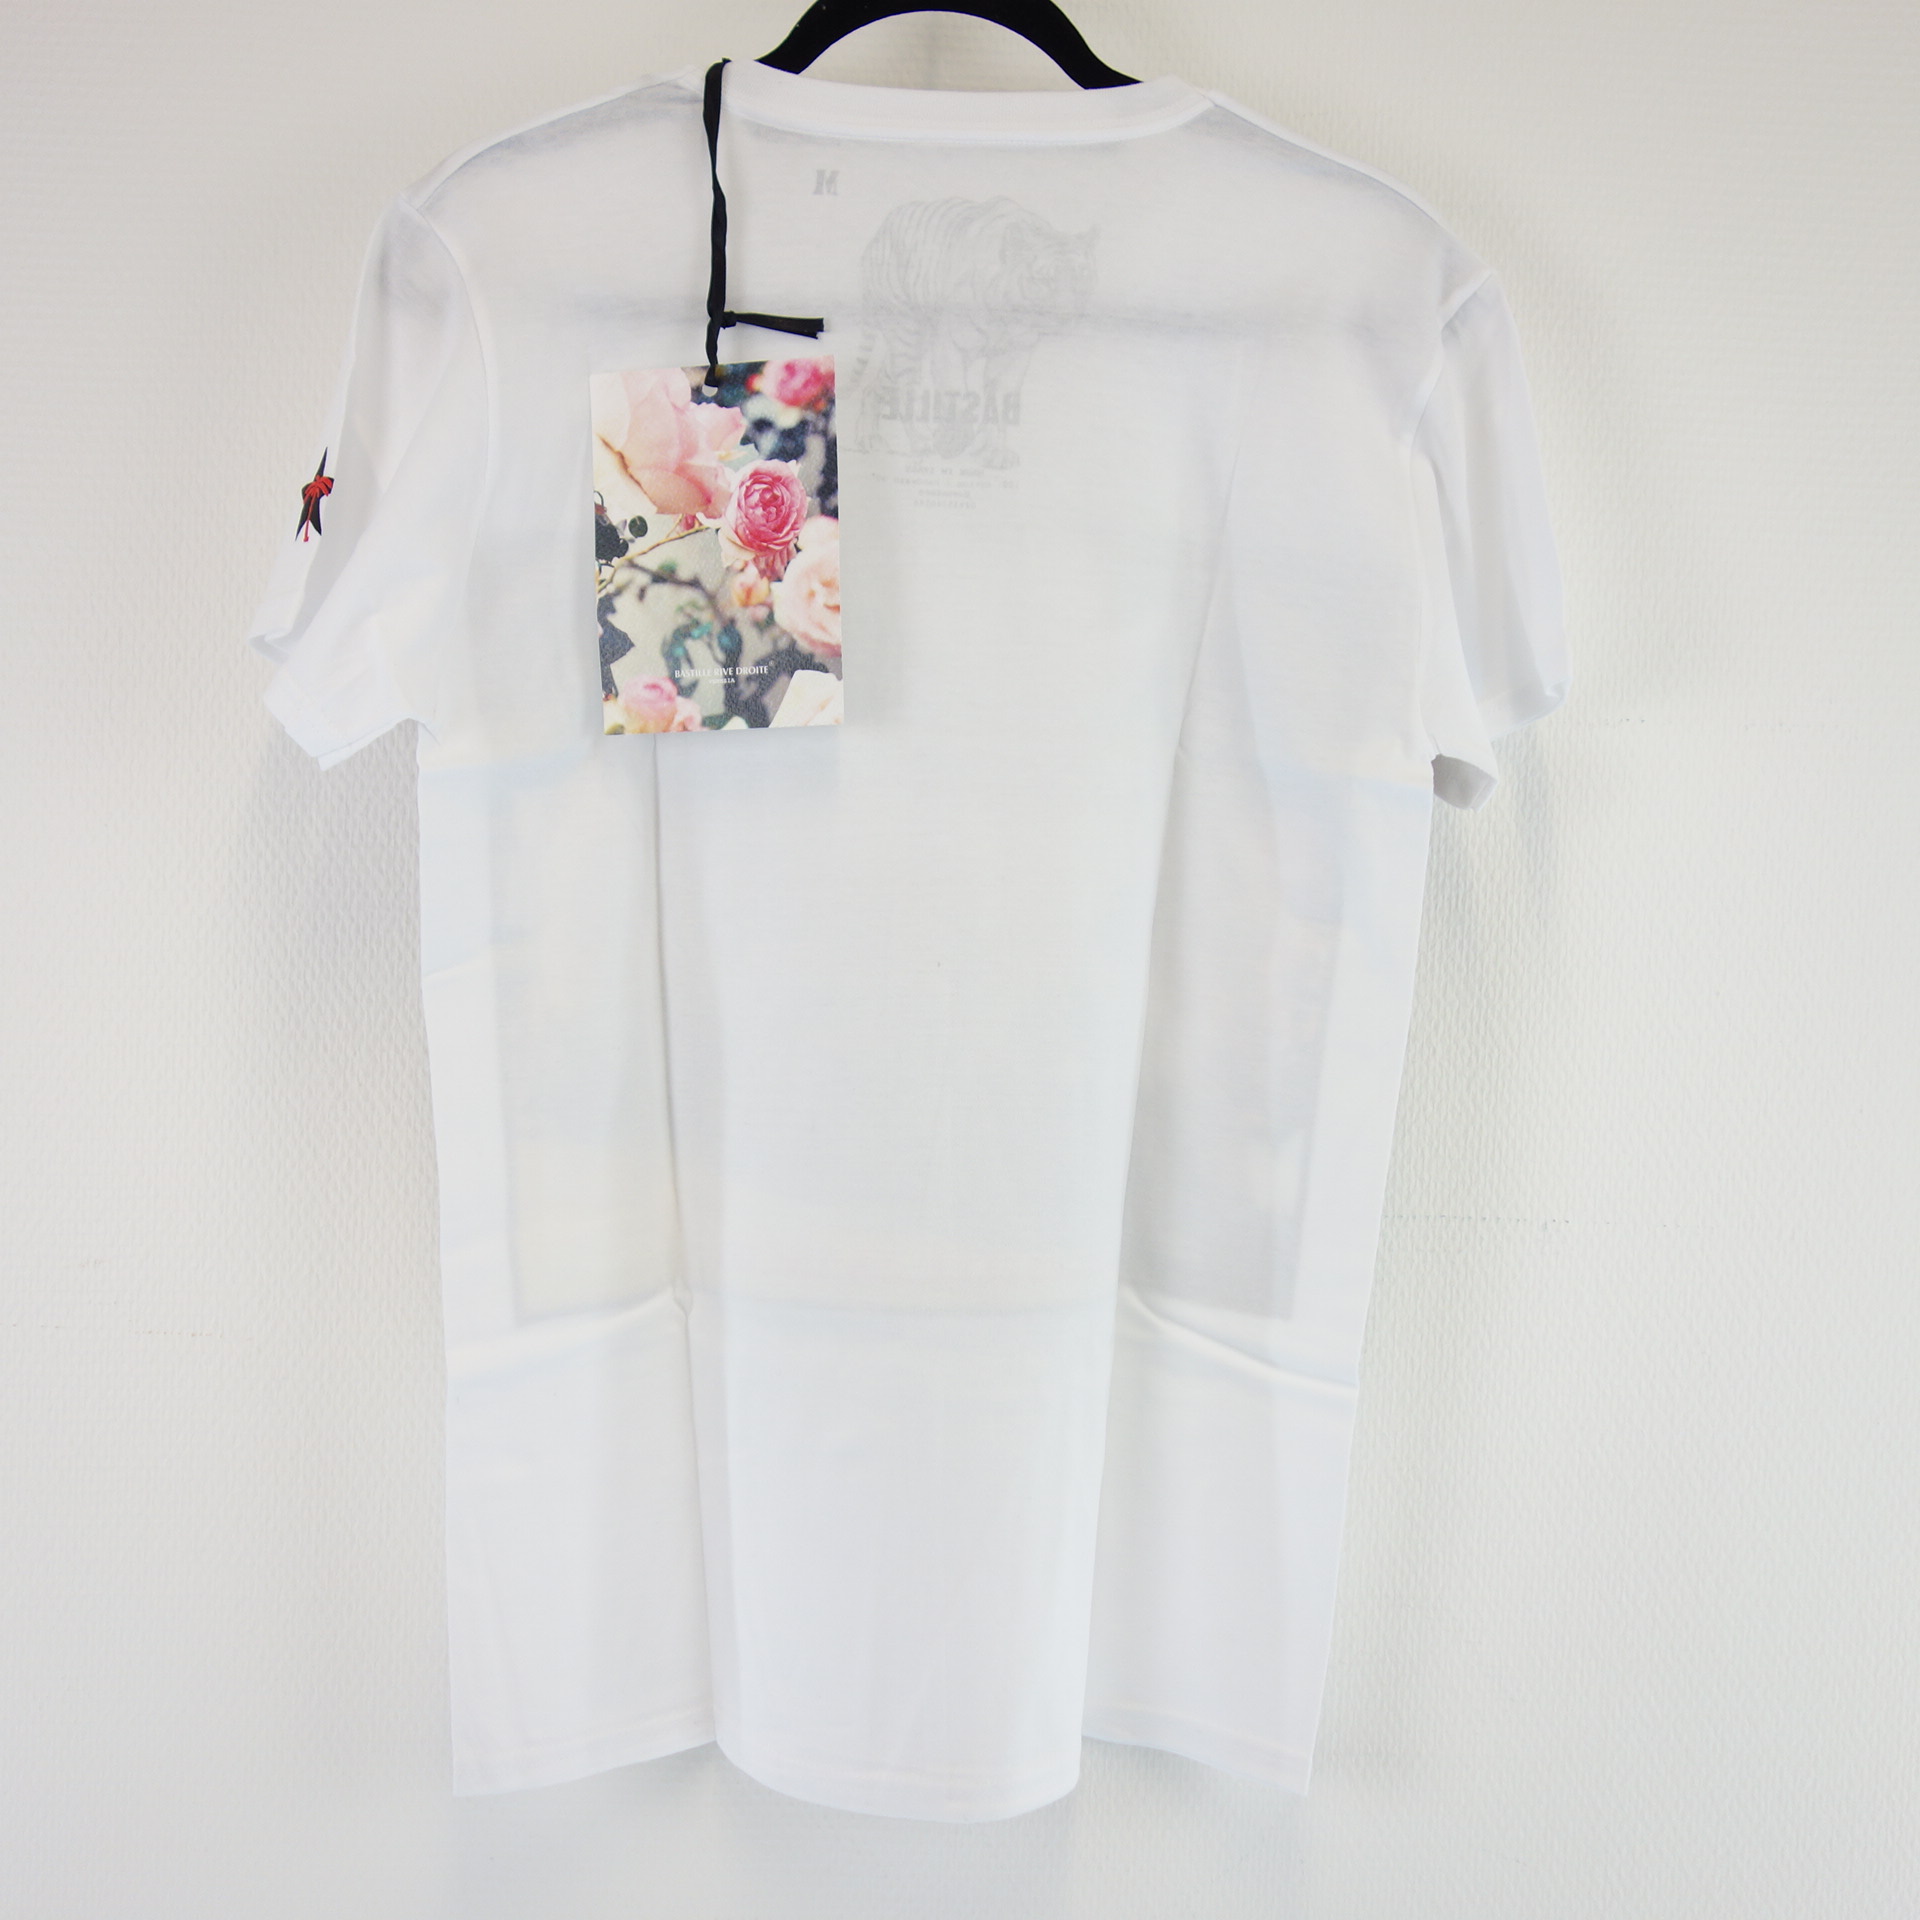 BASTILLE Venezia Rive Droite Herren T-Shirt T Shirt Herrenshirt Oberteil Weiß Modell ANGEL Baumwolle